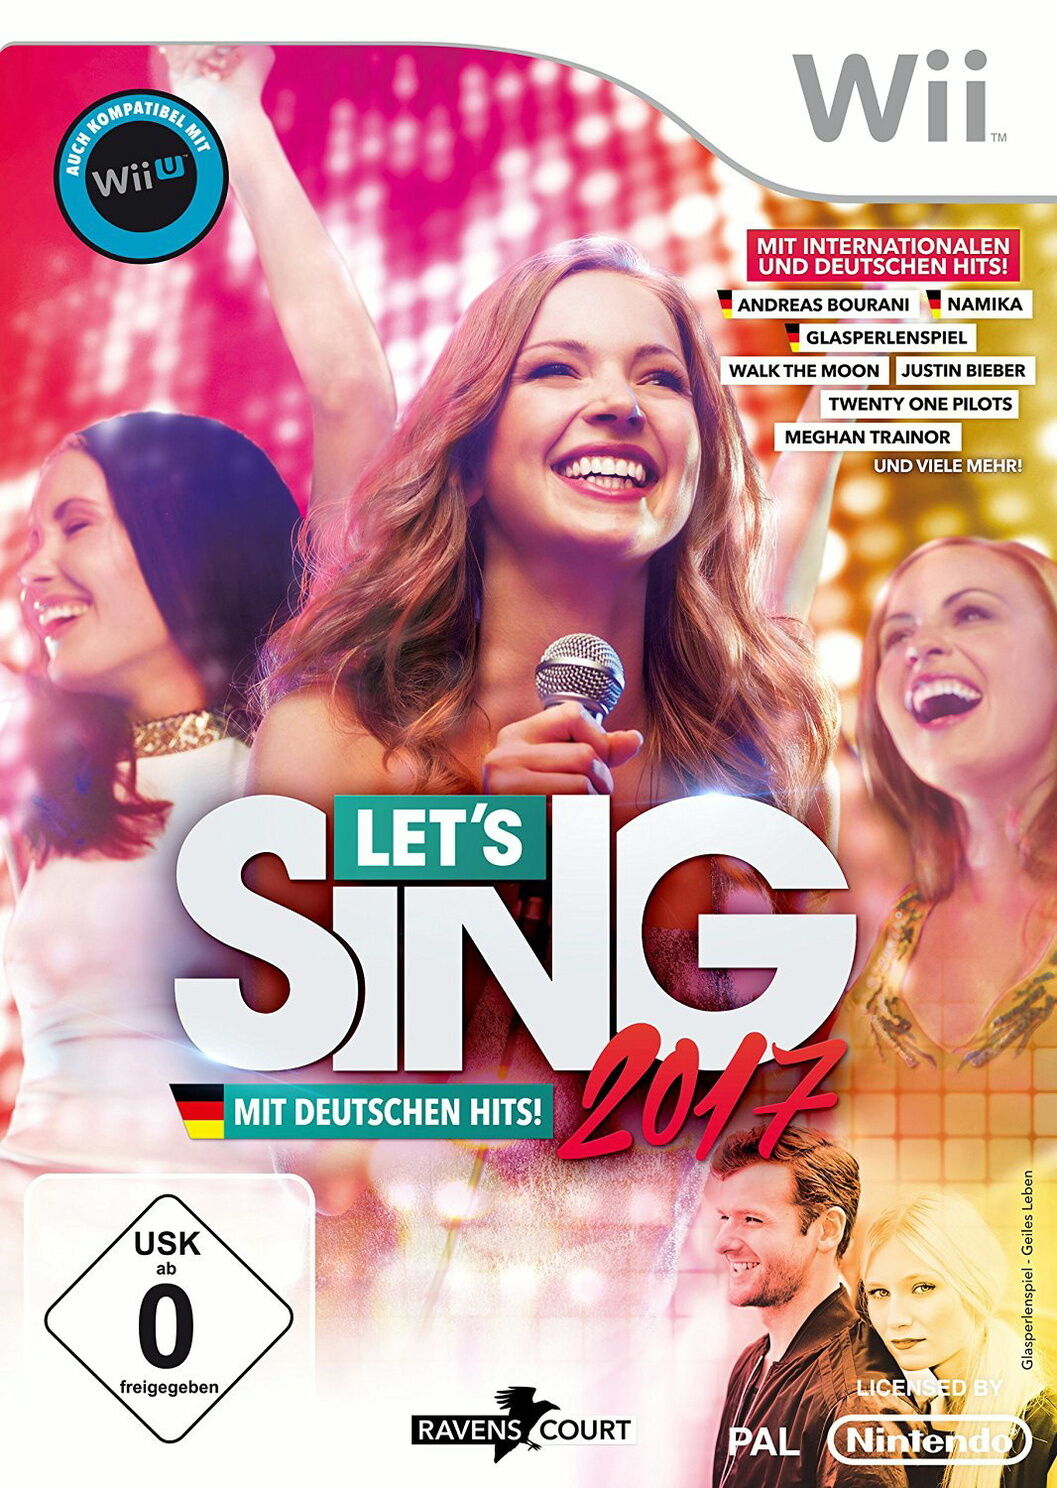 Let's Sing 2017 mit Deutschen Hits